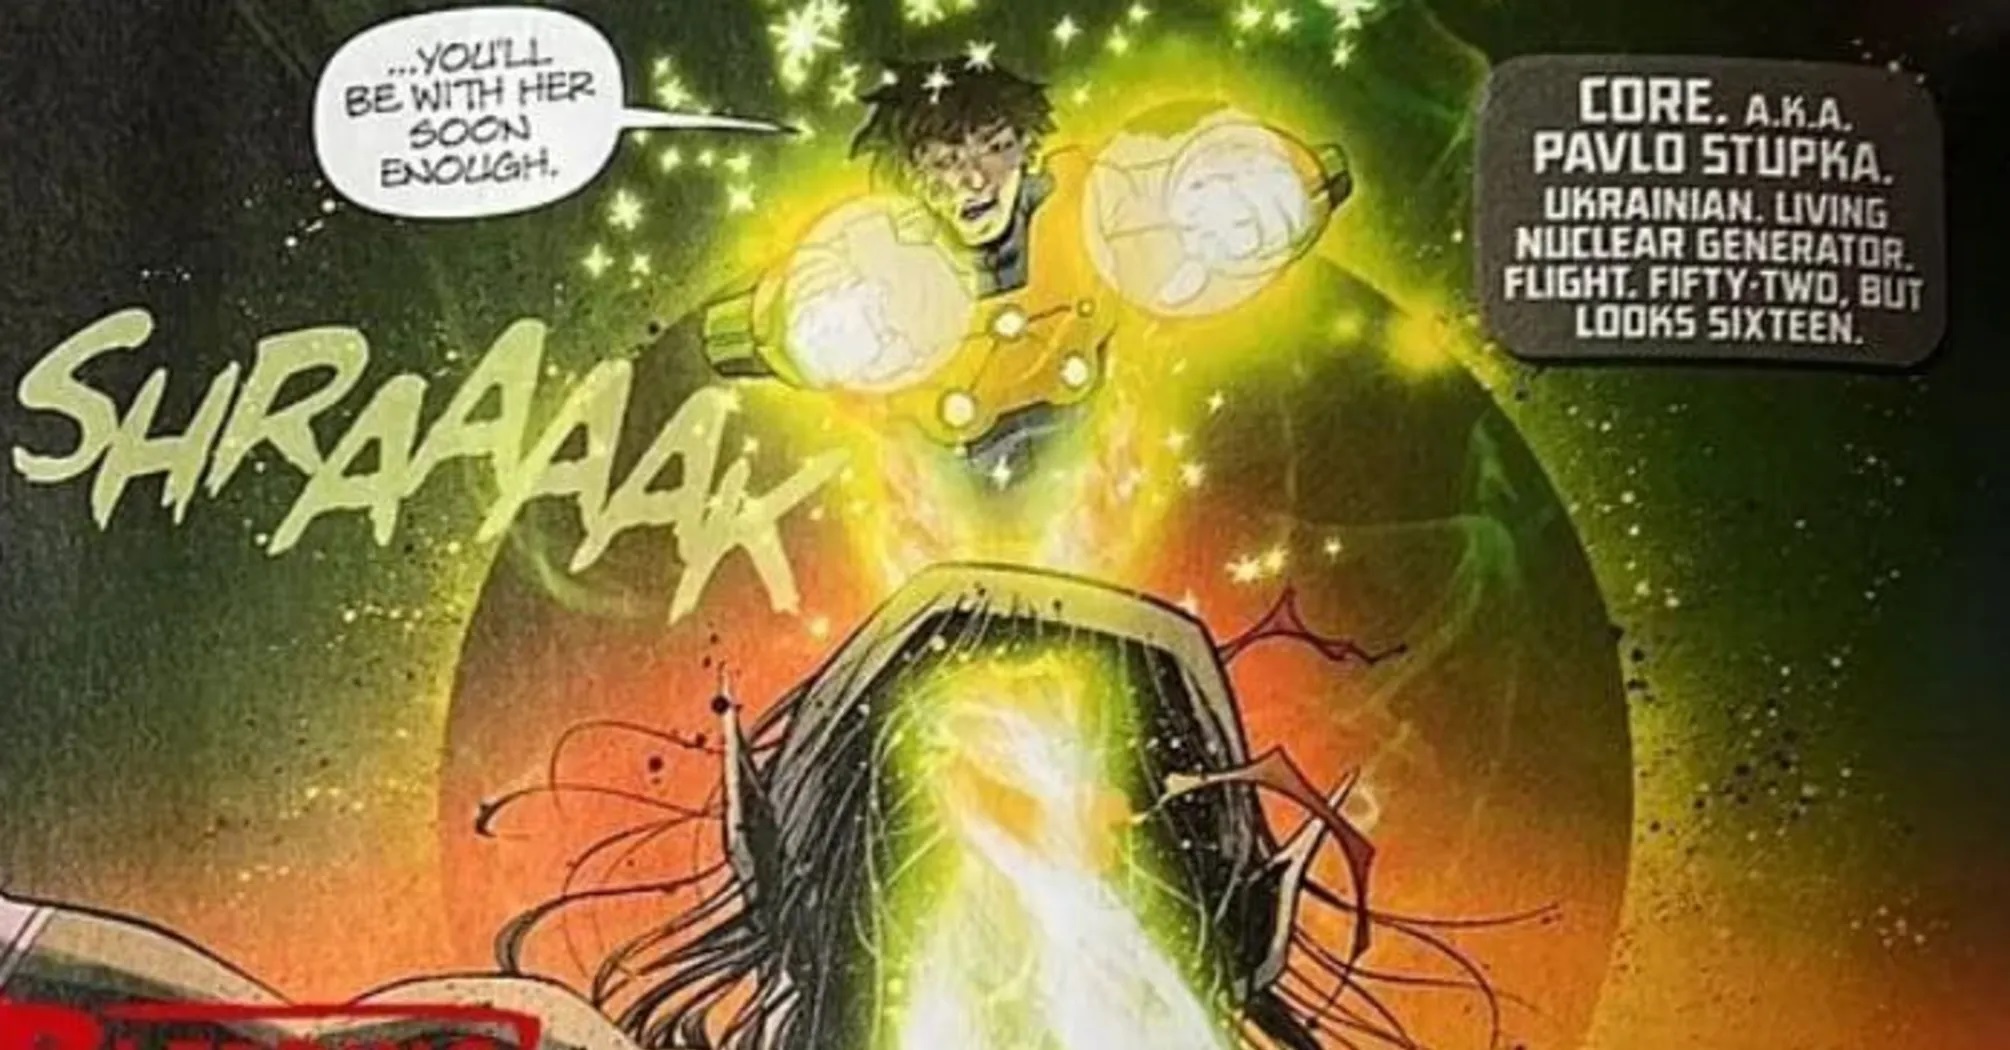 "Generador nuclear vivo": el ucraniano Pavlo Stupka se convierte en el nuevo superhéroe de DC Comics